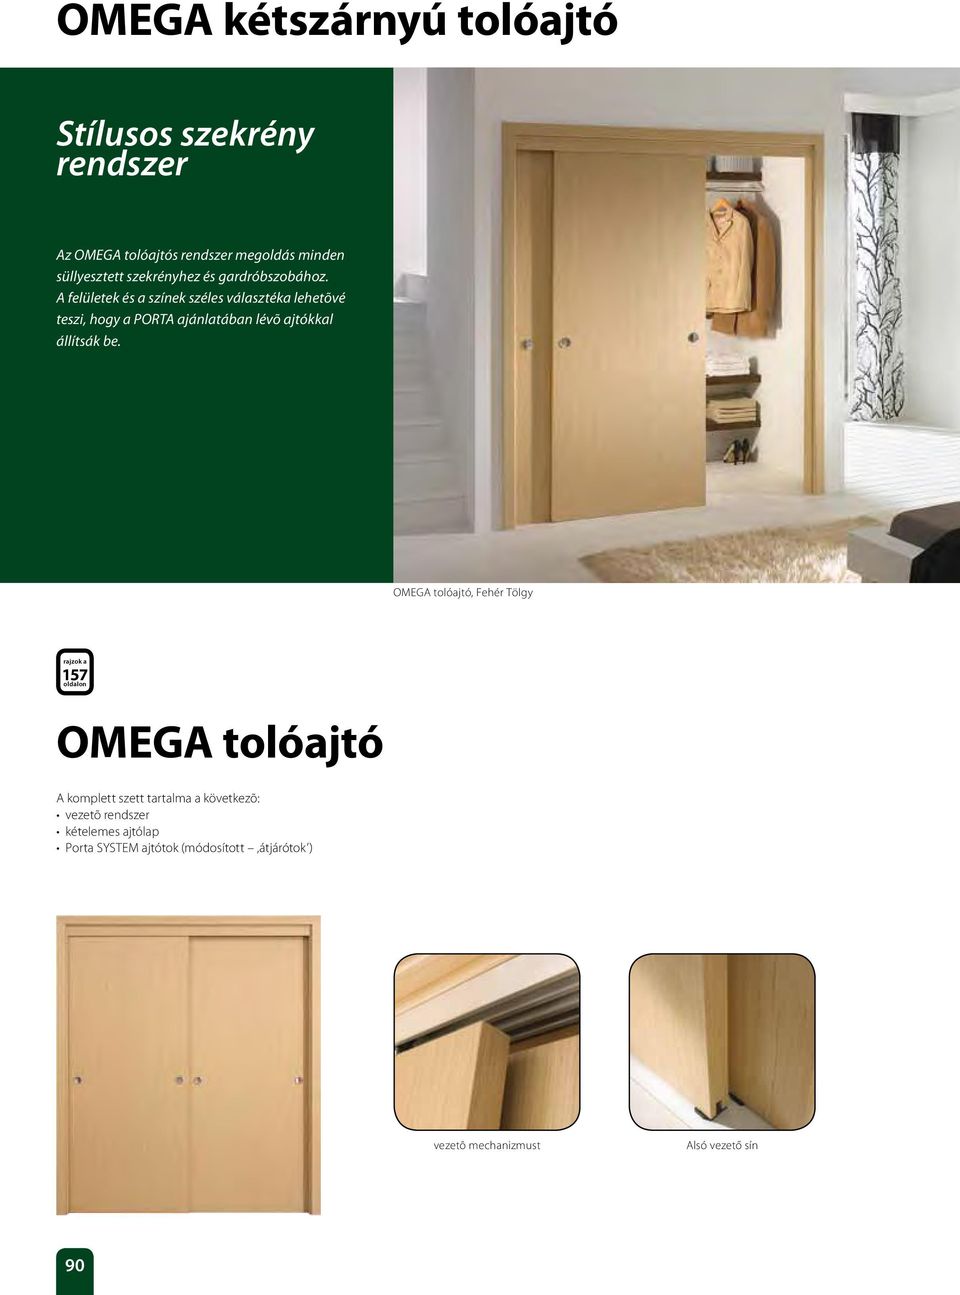 A felületek és a színek széles választéka lehetõvé teszi, hogy a PORTA ajánlatában lévõ ajtókkal állítsák be.